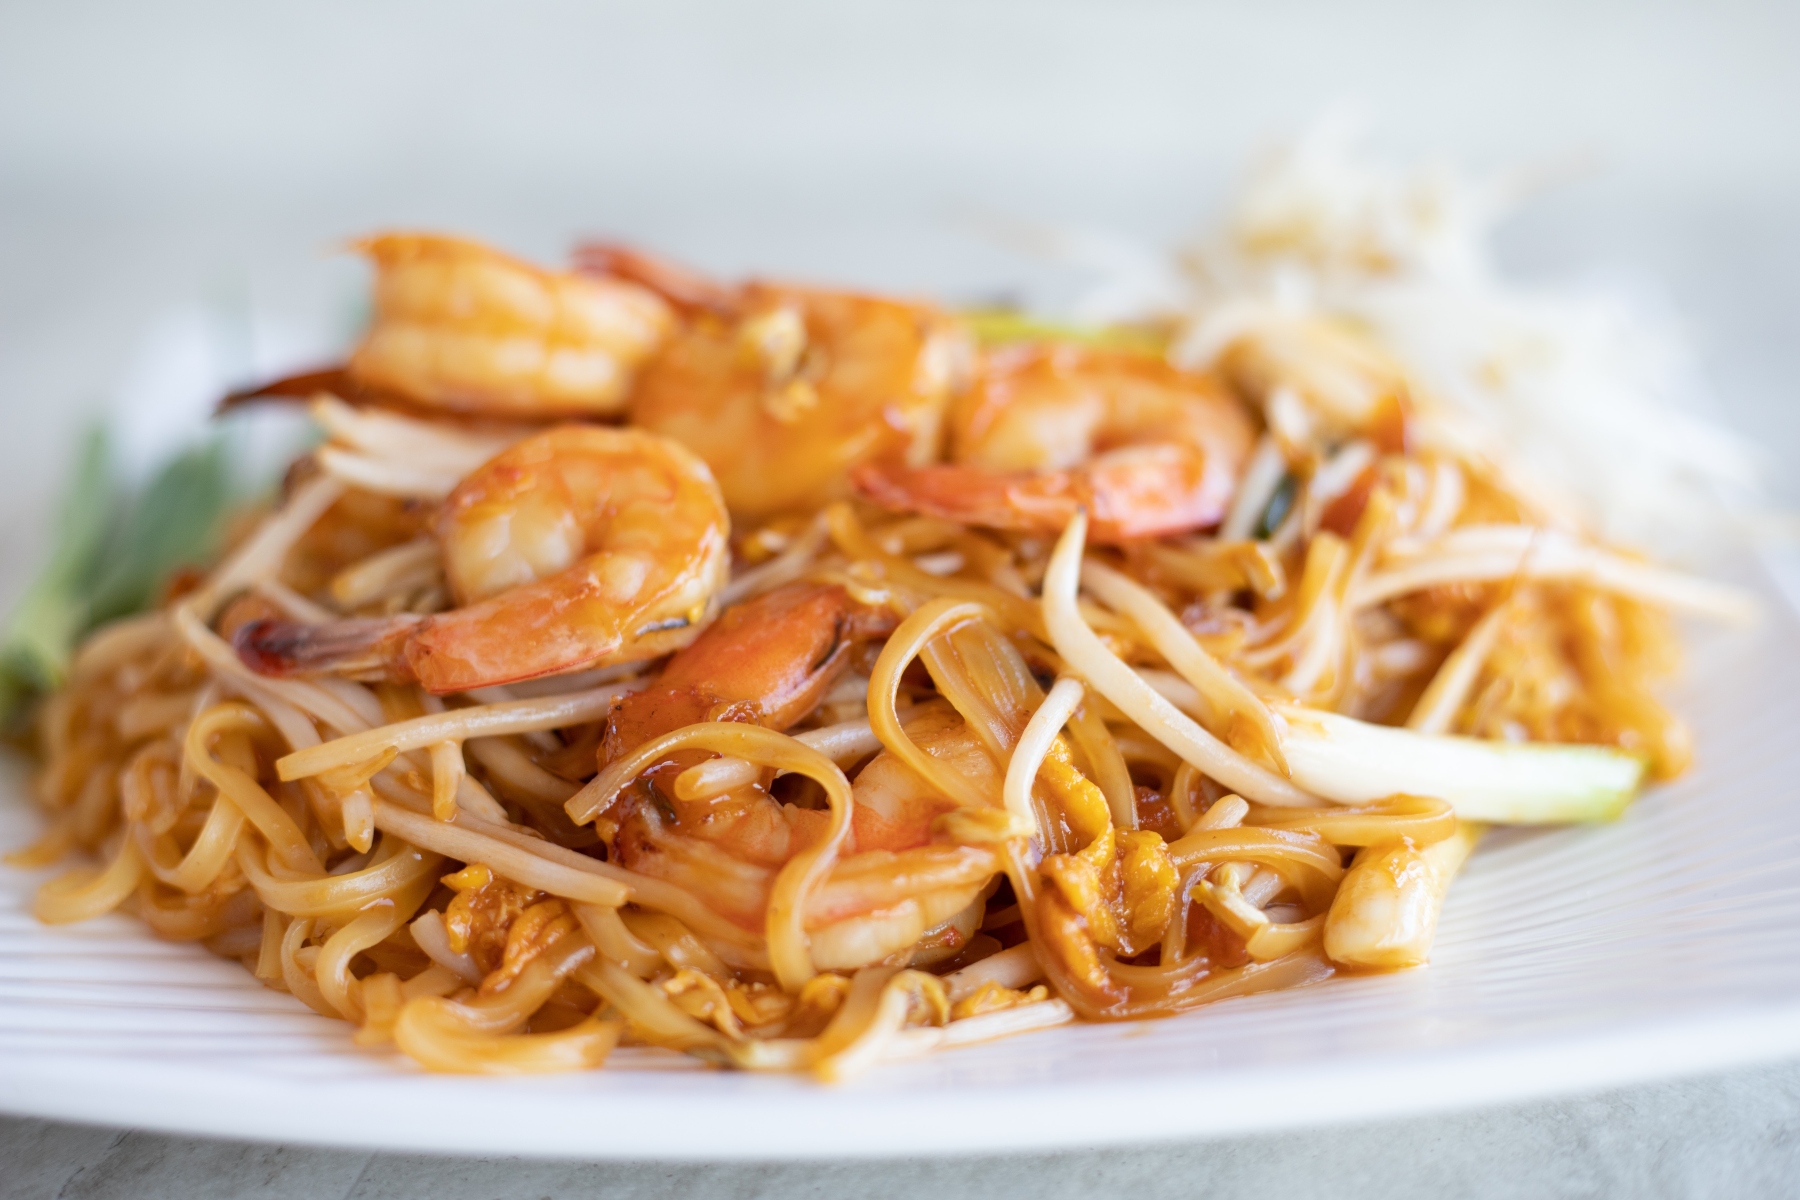 Διατροφή:Φτιάξτε μια εύκολη συνταγή με ζυμαρικά με γαρίδες σκόρδου